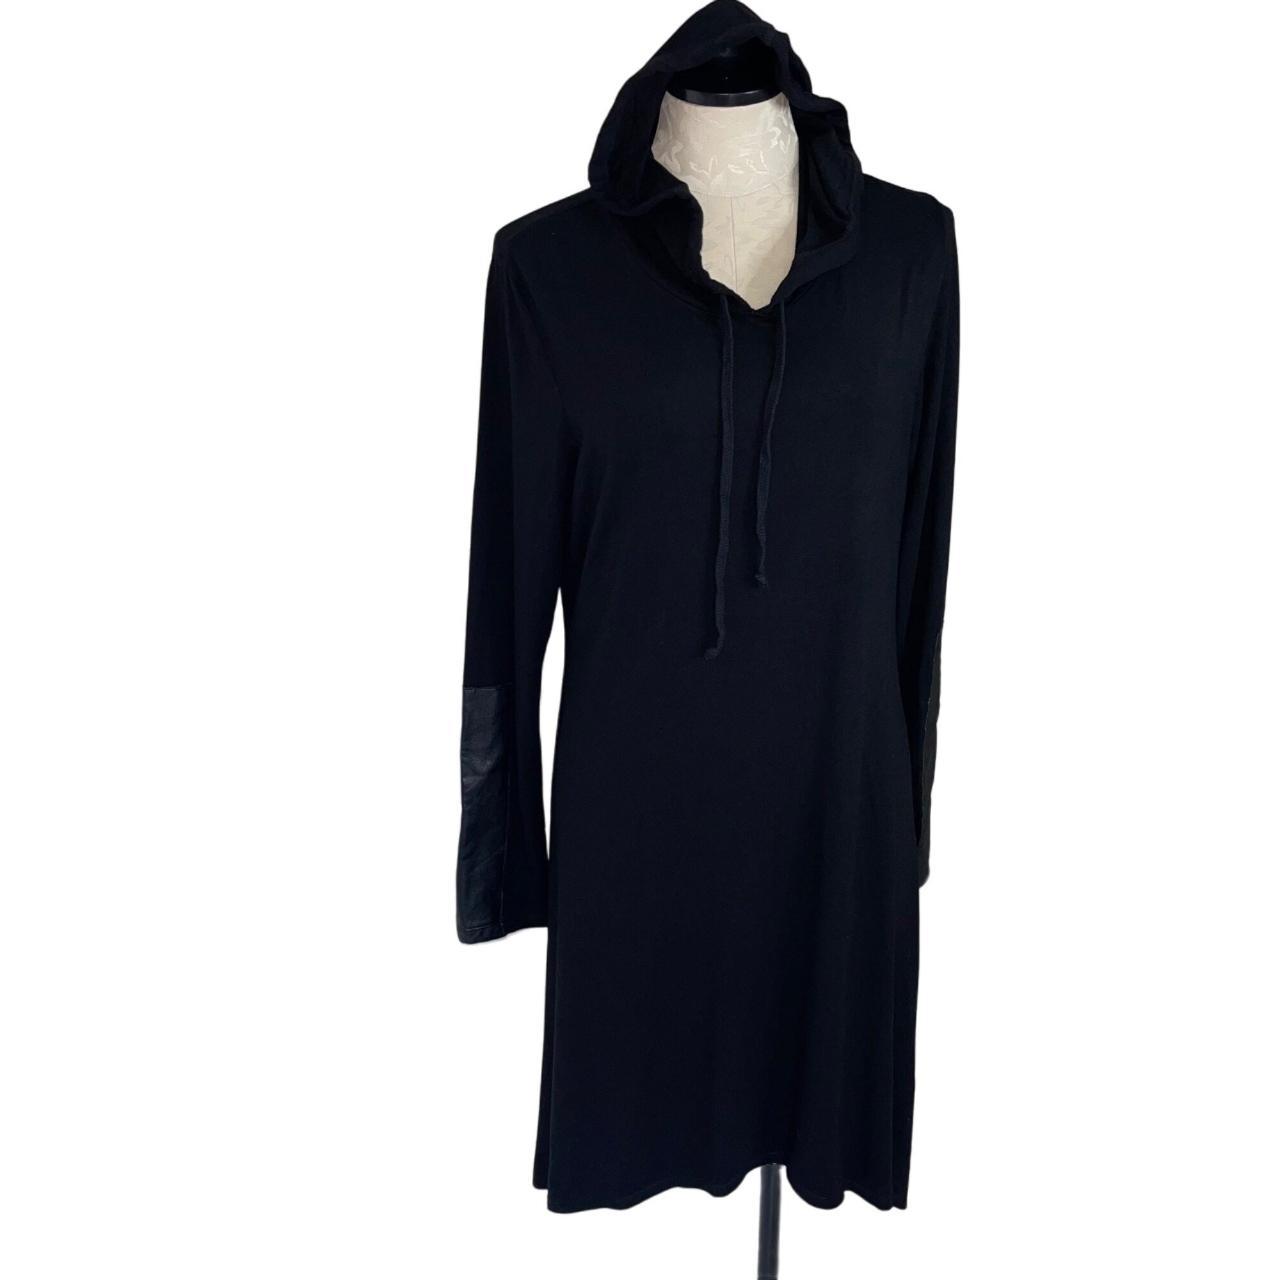 Karen Kane Hooded Sweatshirt Dress Size XL Black... - Depop